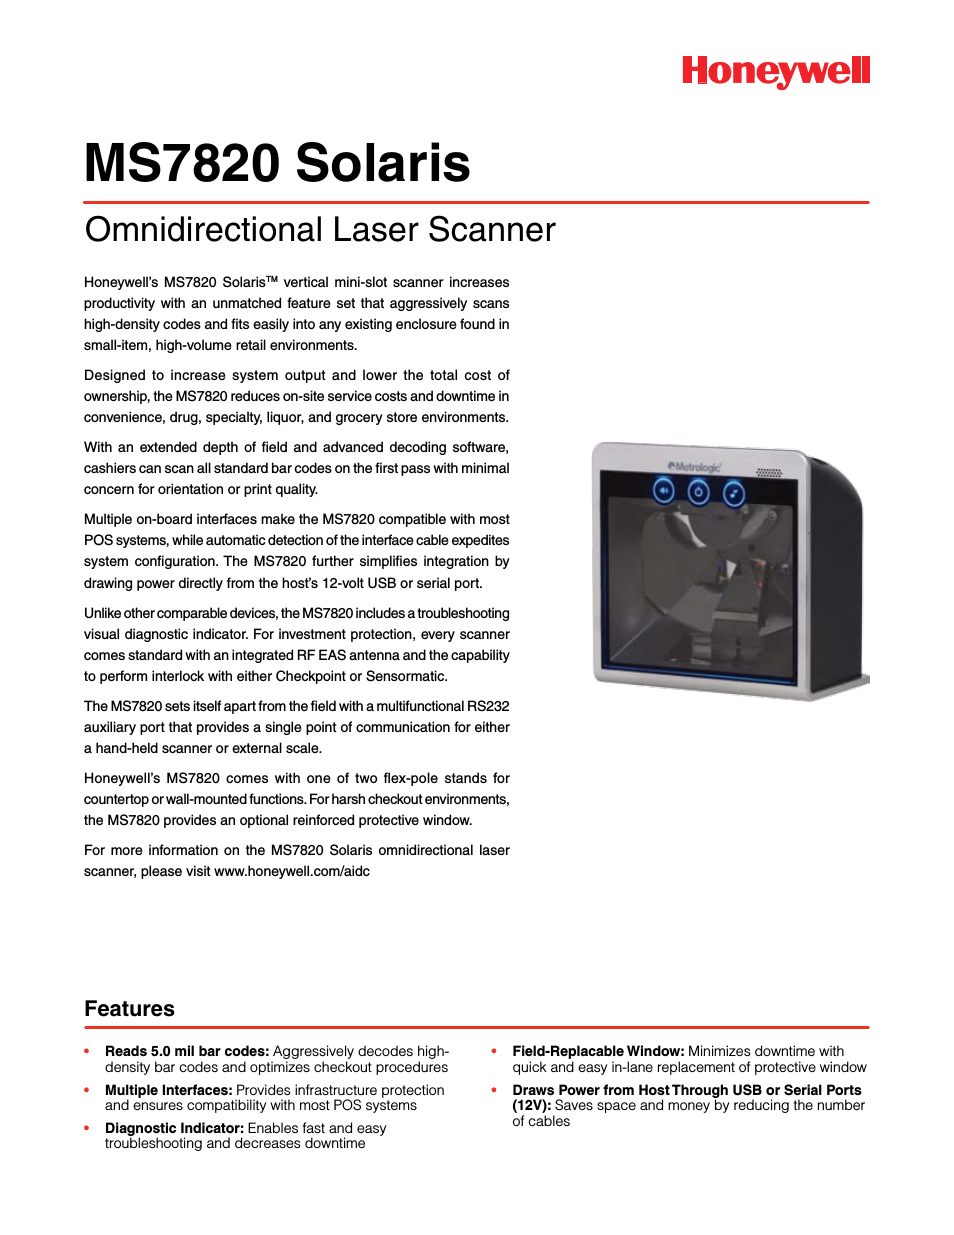 Solaris MS7820